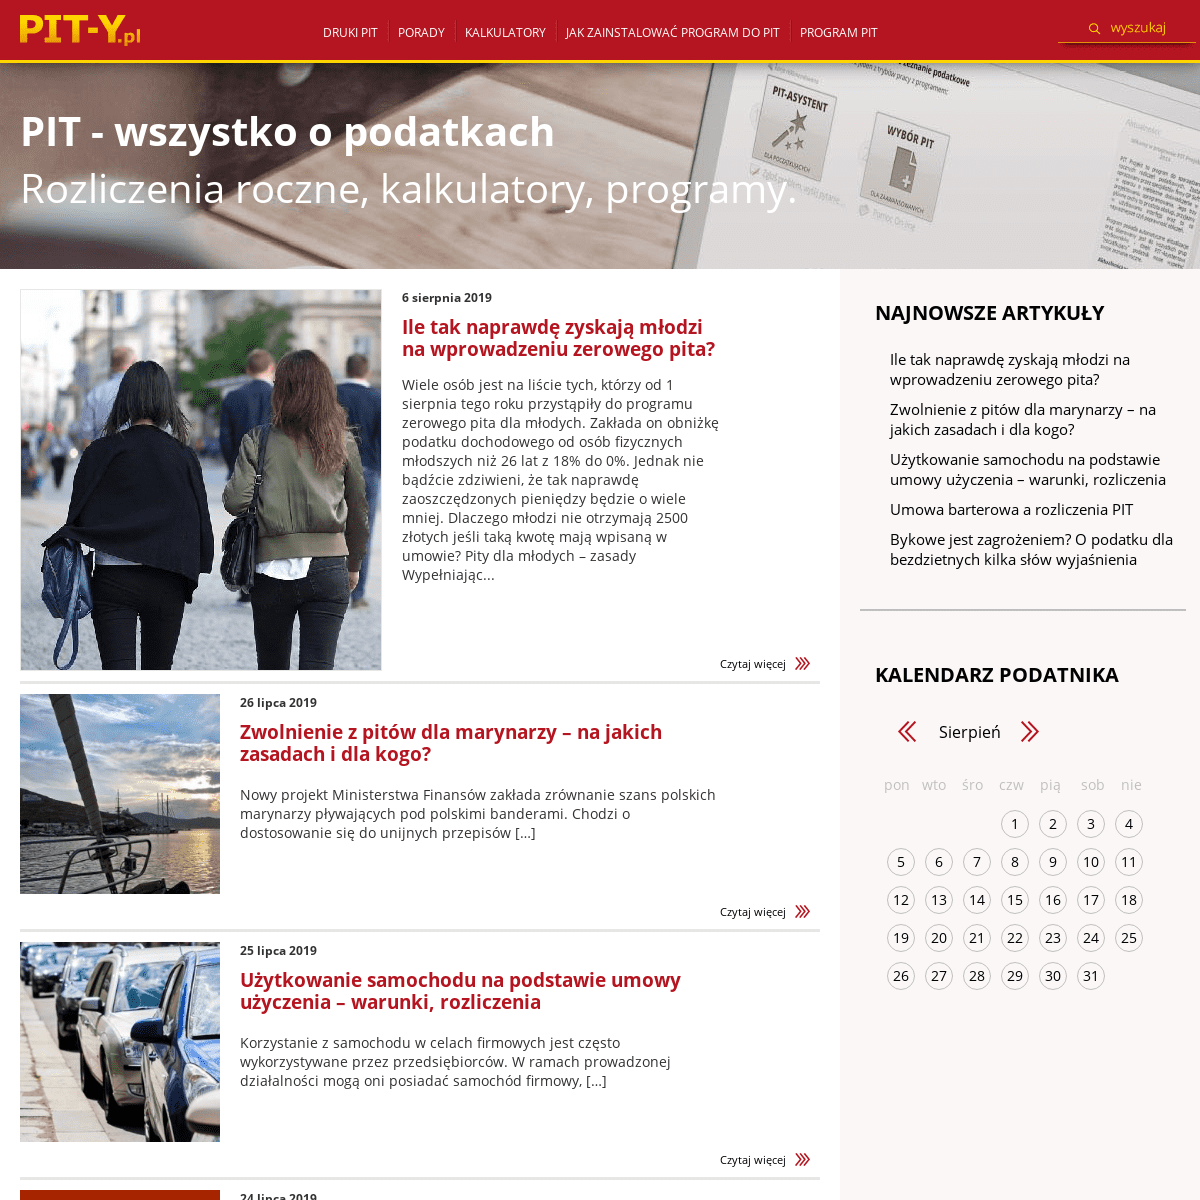 PITy 2018 / 2019 - Program PIT-y.pl - Rozliczenie PIT Online